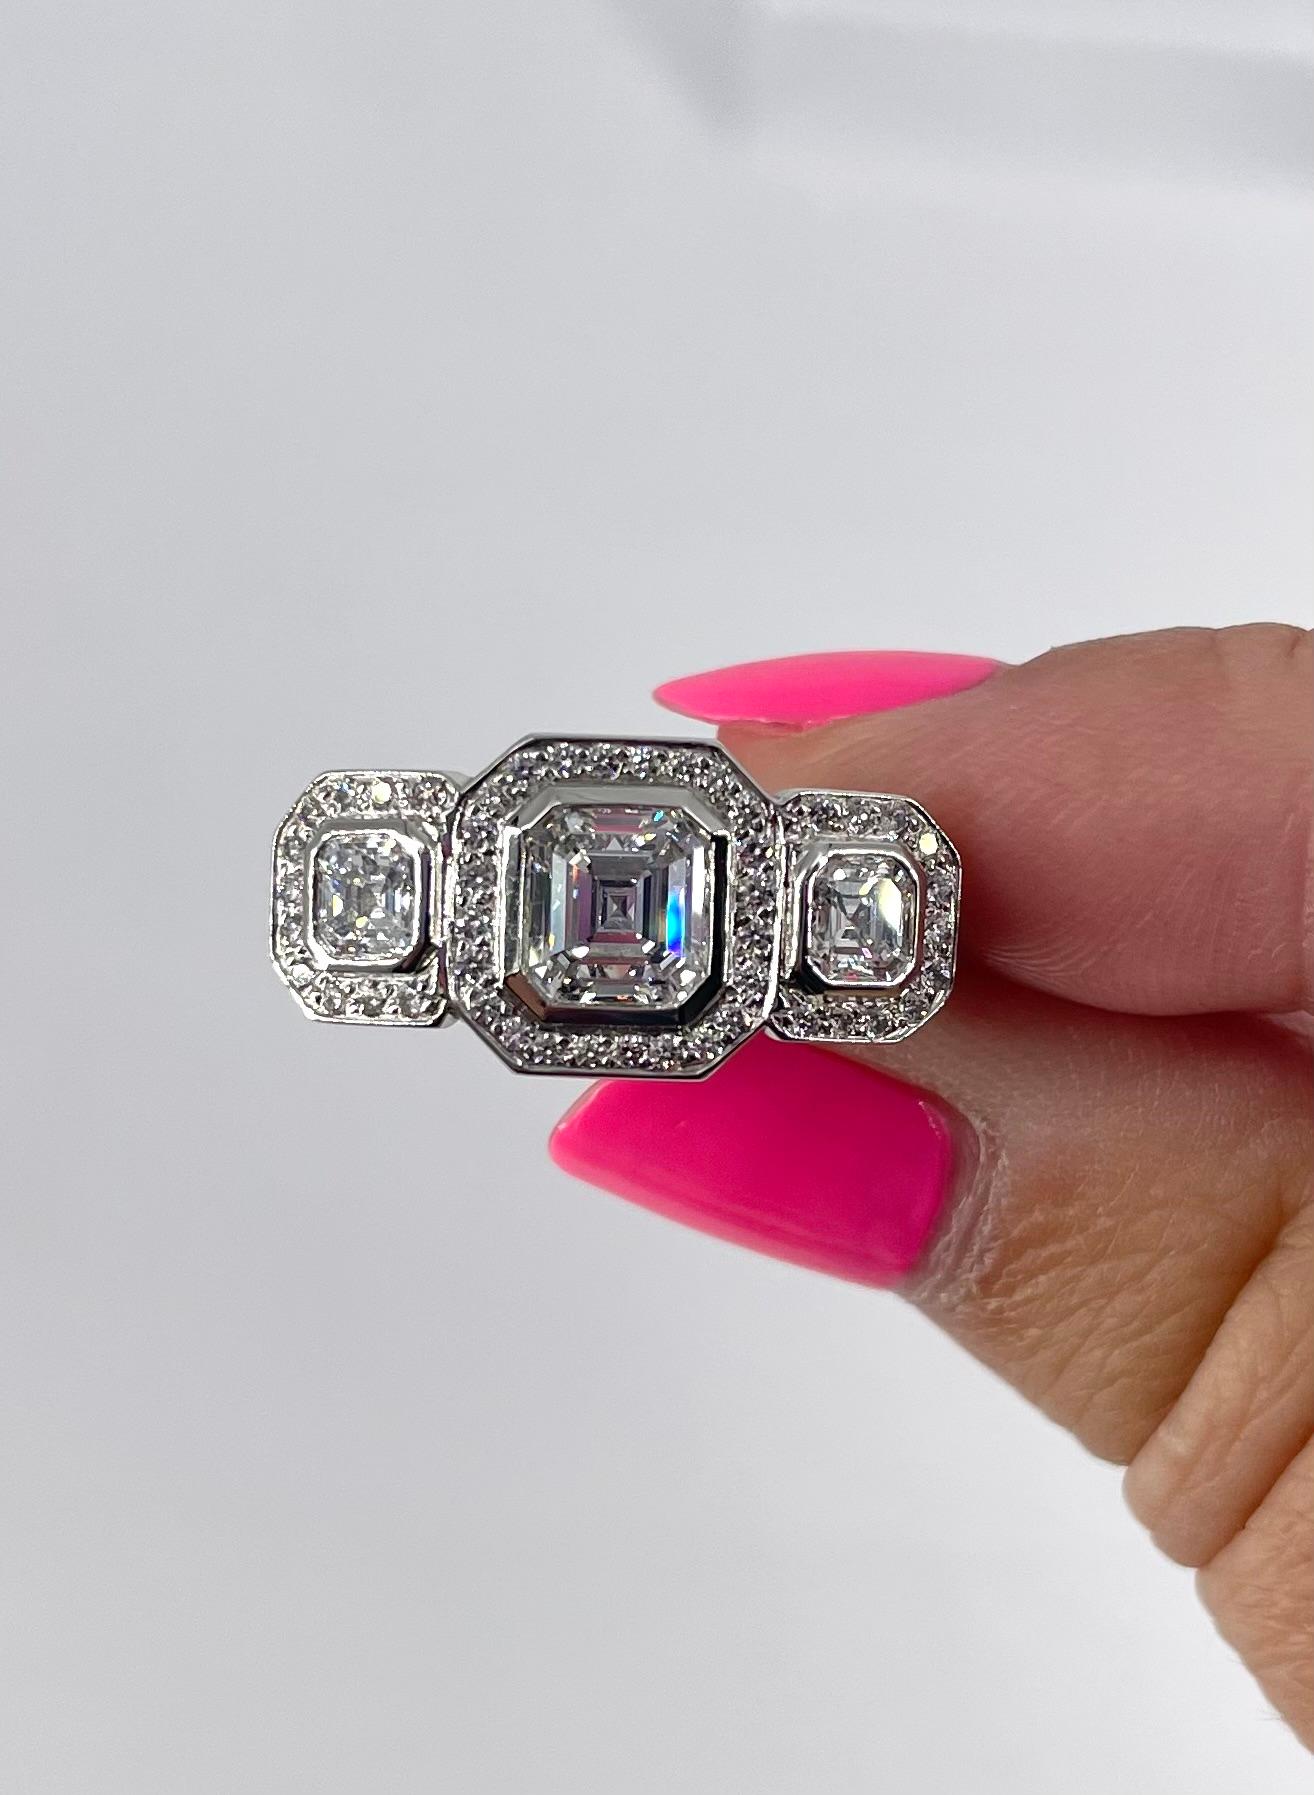 Dieser beeindruckende Ring mit drei Steinen ist perfekt für jemanden, der ein Zeichen setzen will! Der Ring enthält drei Diamanten im Asscher-Schliff: Der mittlere hat 1,10 Karat und ist von GIA mit der Farbe F und der Reinheit SI2 zertifiziert. Die